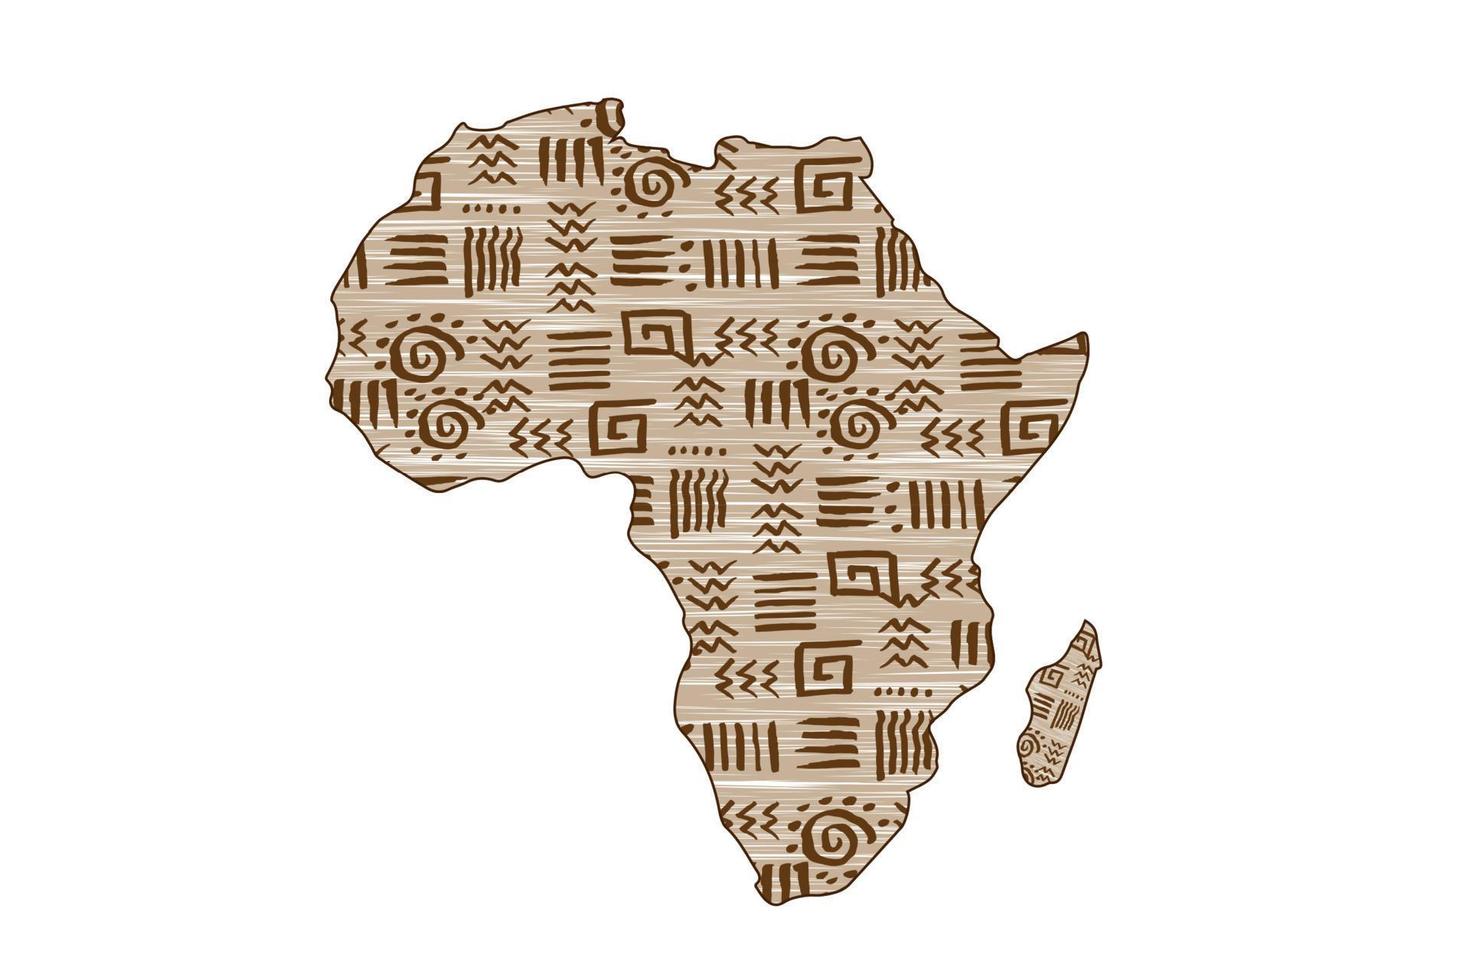 África estampado mapa e moldura motivos étnicos. banner sem costura com padrão africano grunge tradicional tribal, elementos, design de conceito. vetor continente africano étnico isolado no fundo branco